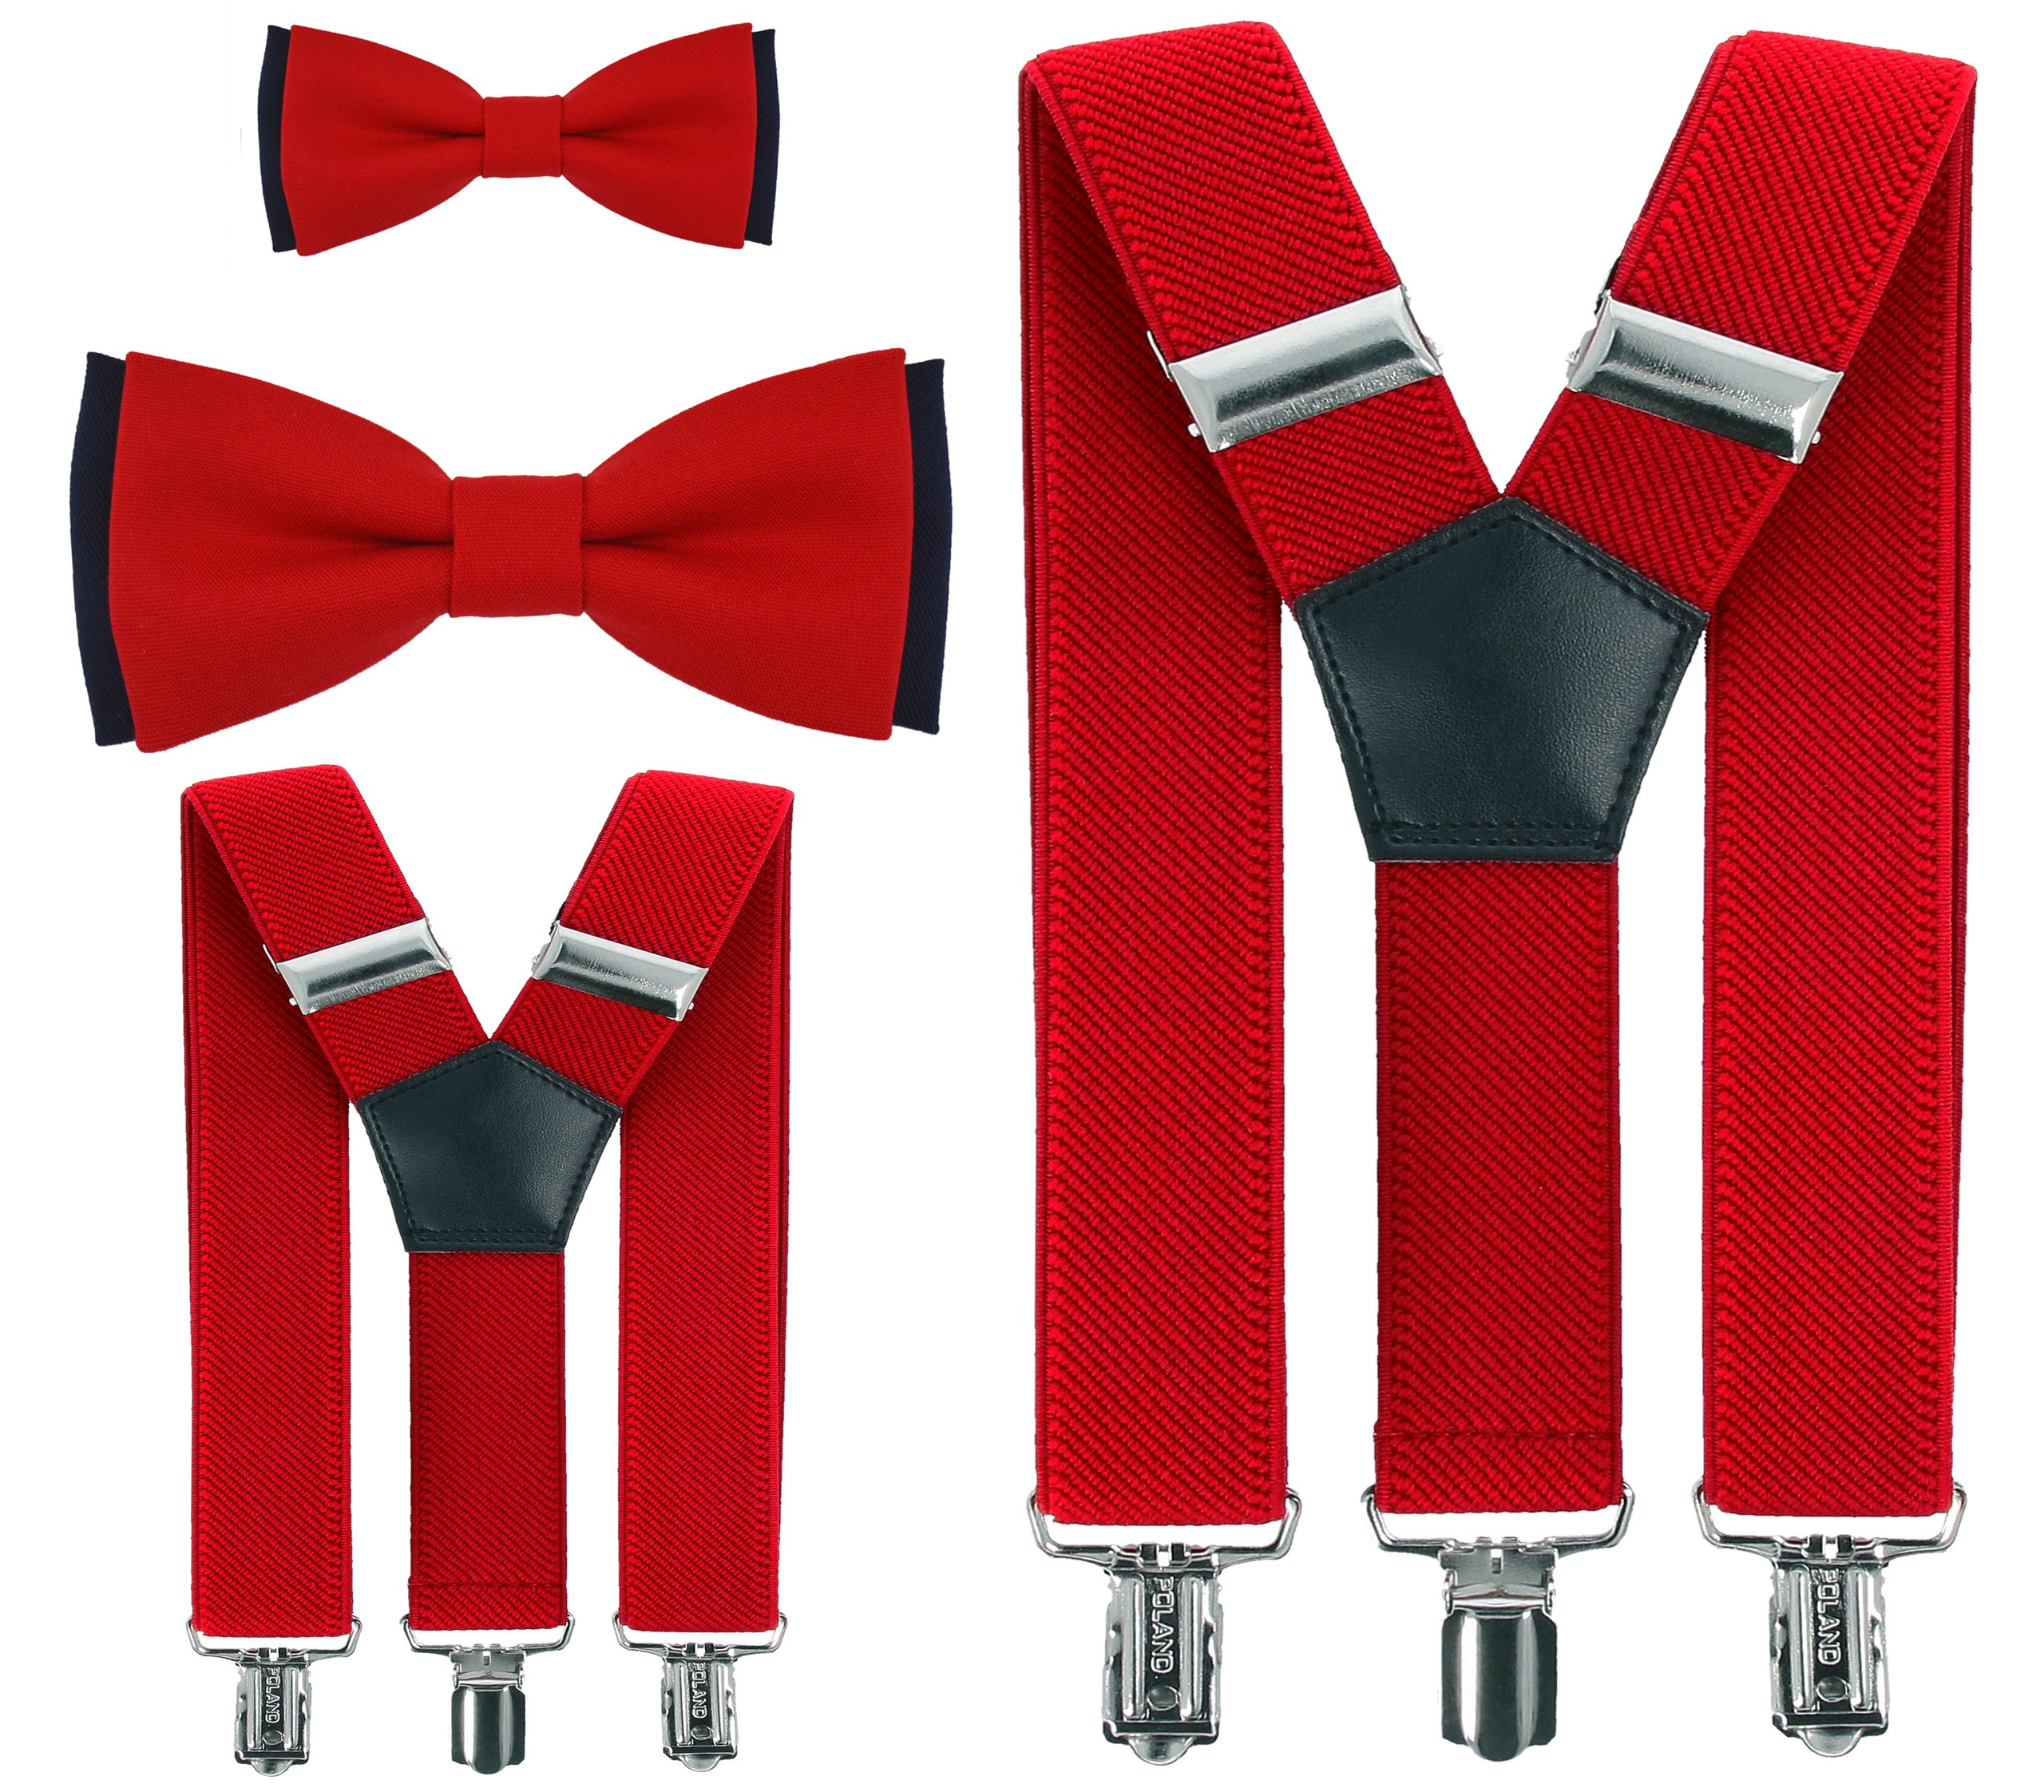 Название подтяжек. Красные подтяжки. Красные подтяжки мужские. Подарочный комплект галстук с подтяжками. Папа в бабочке.